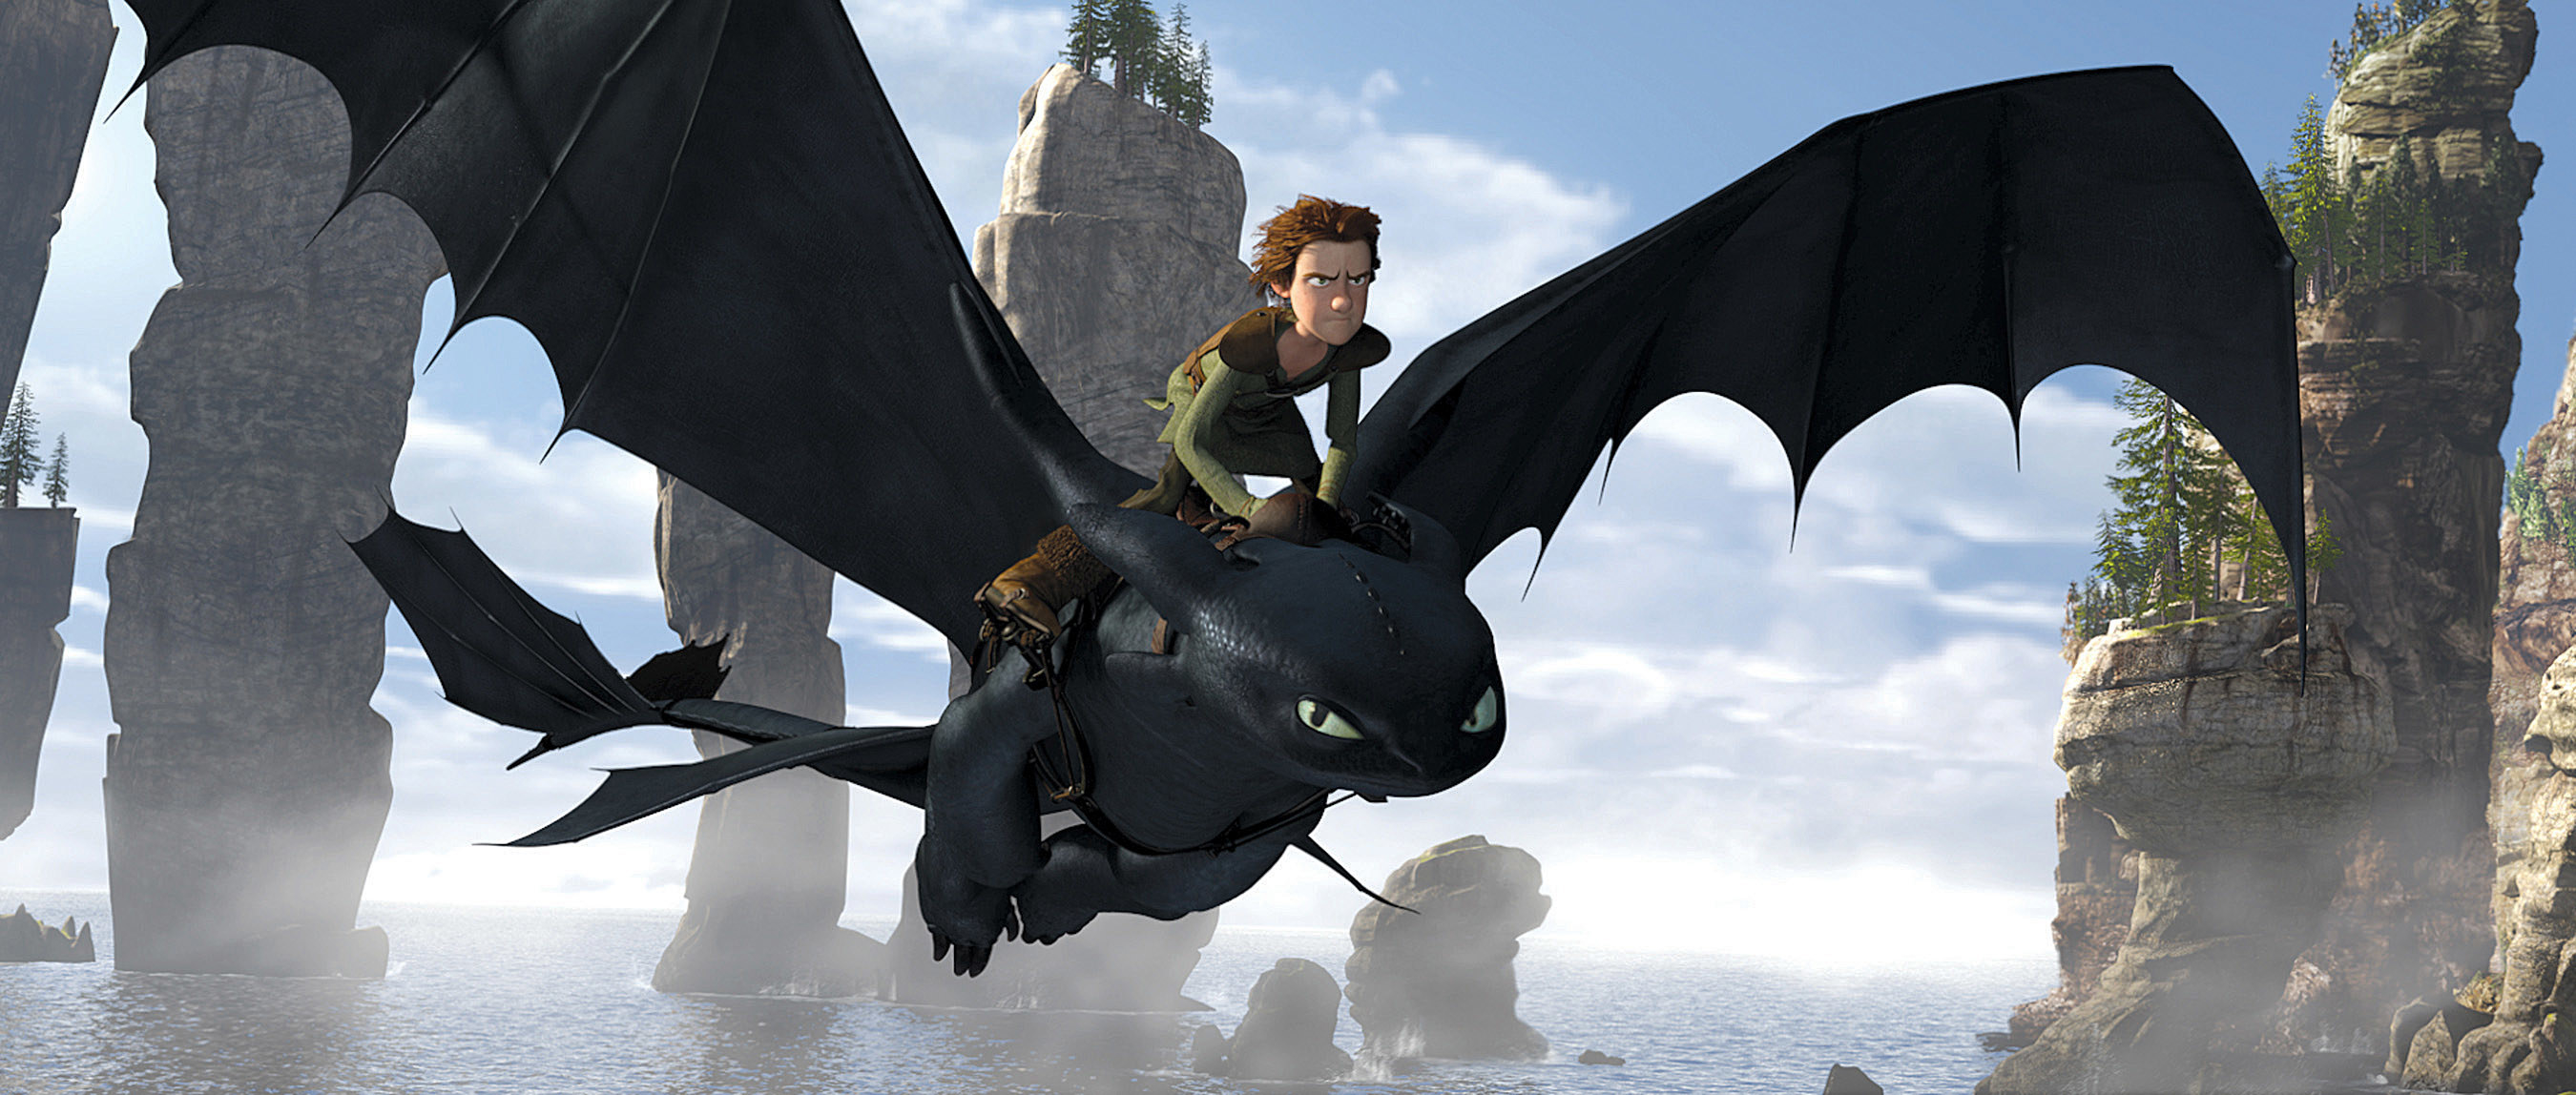 A boy rides a dragon